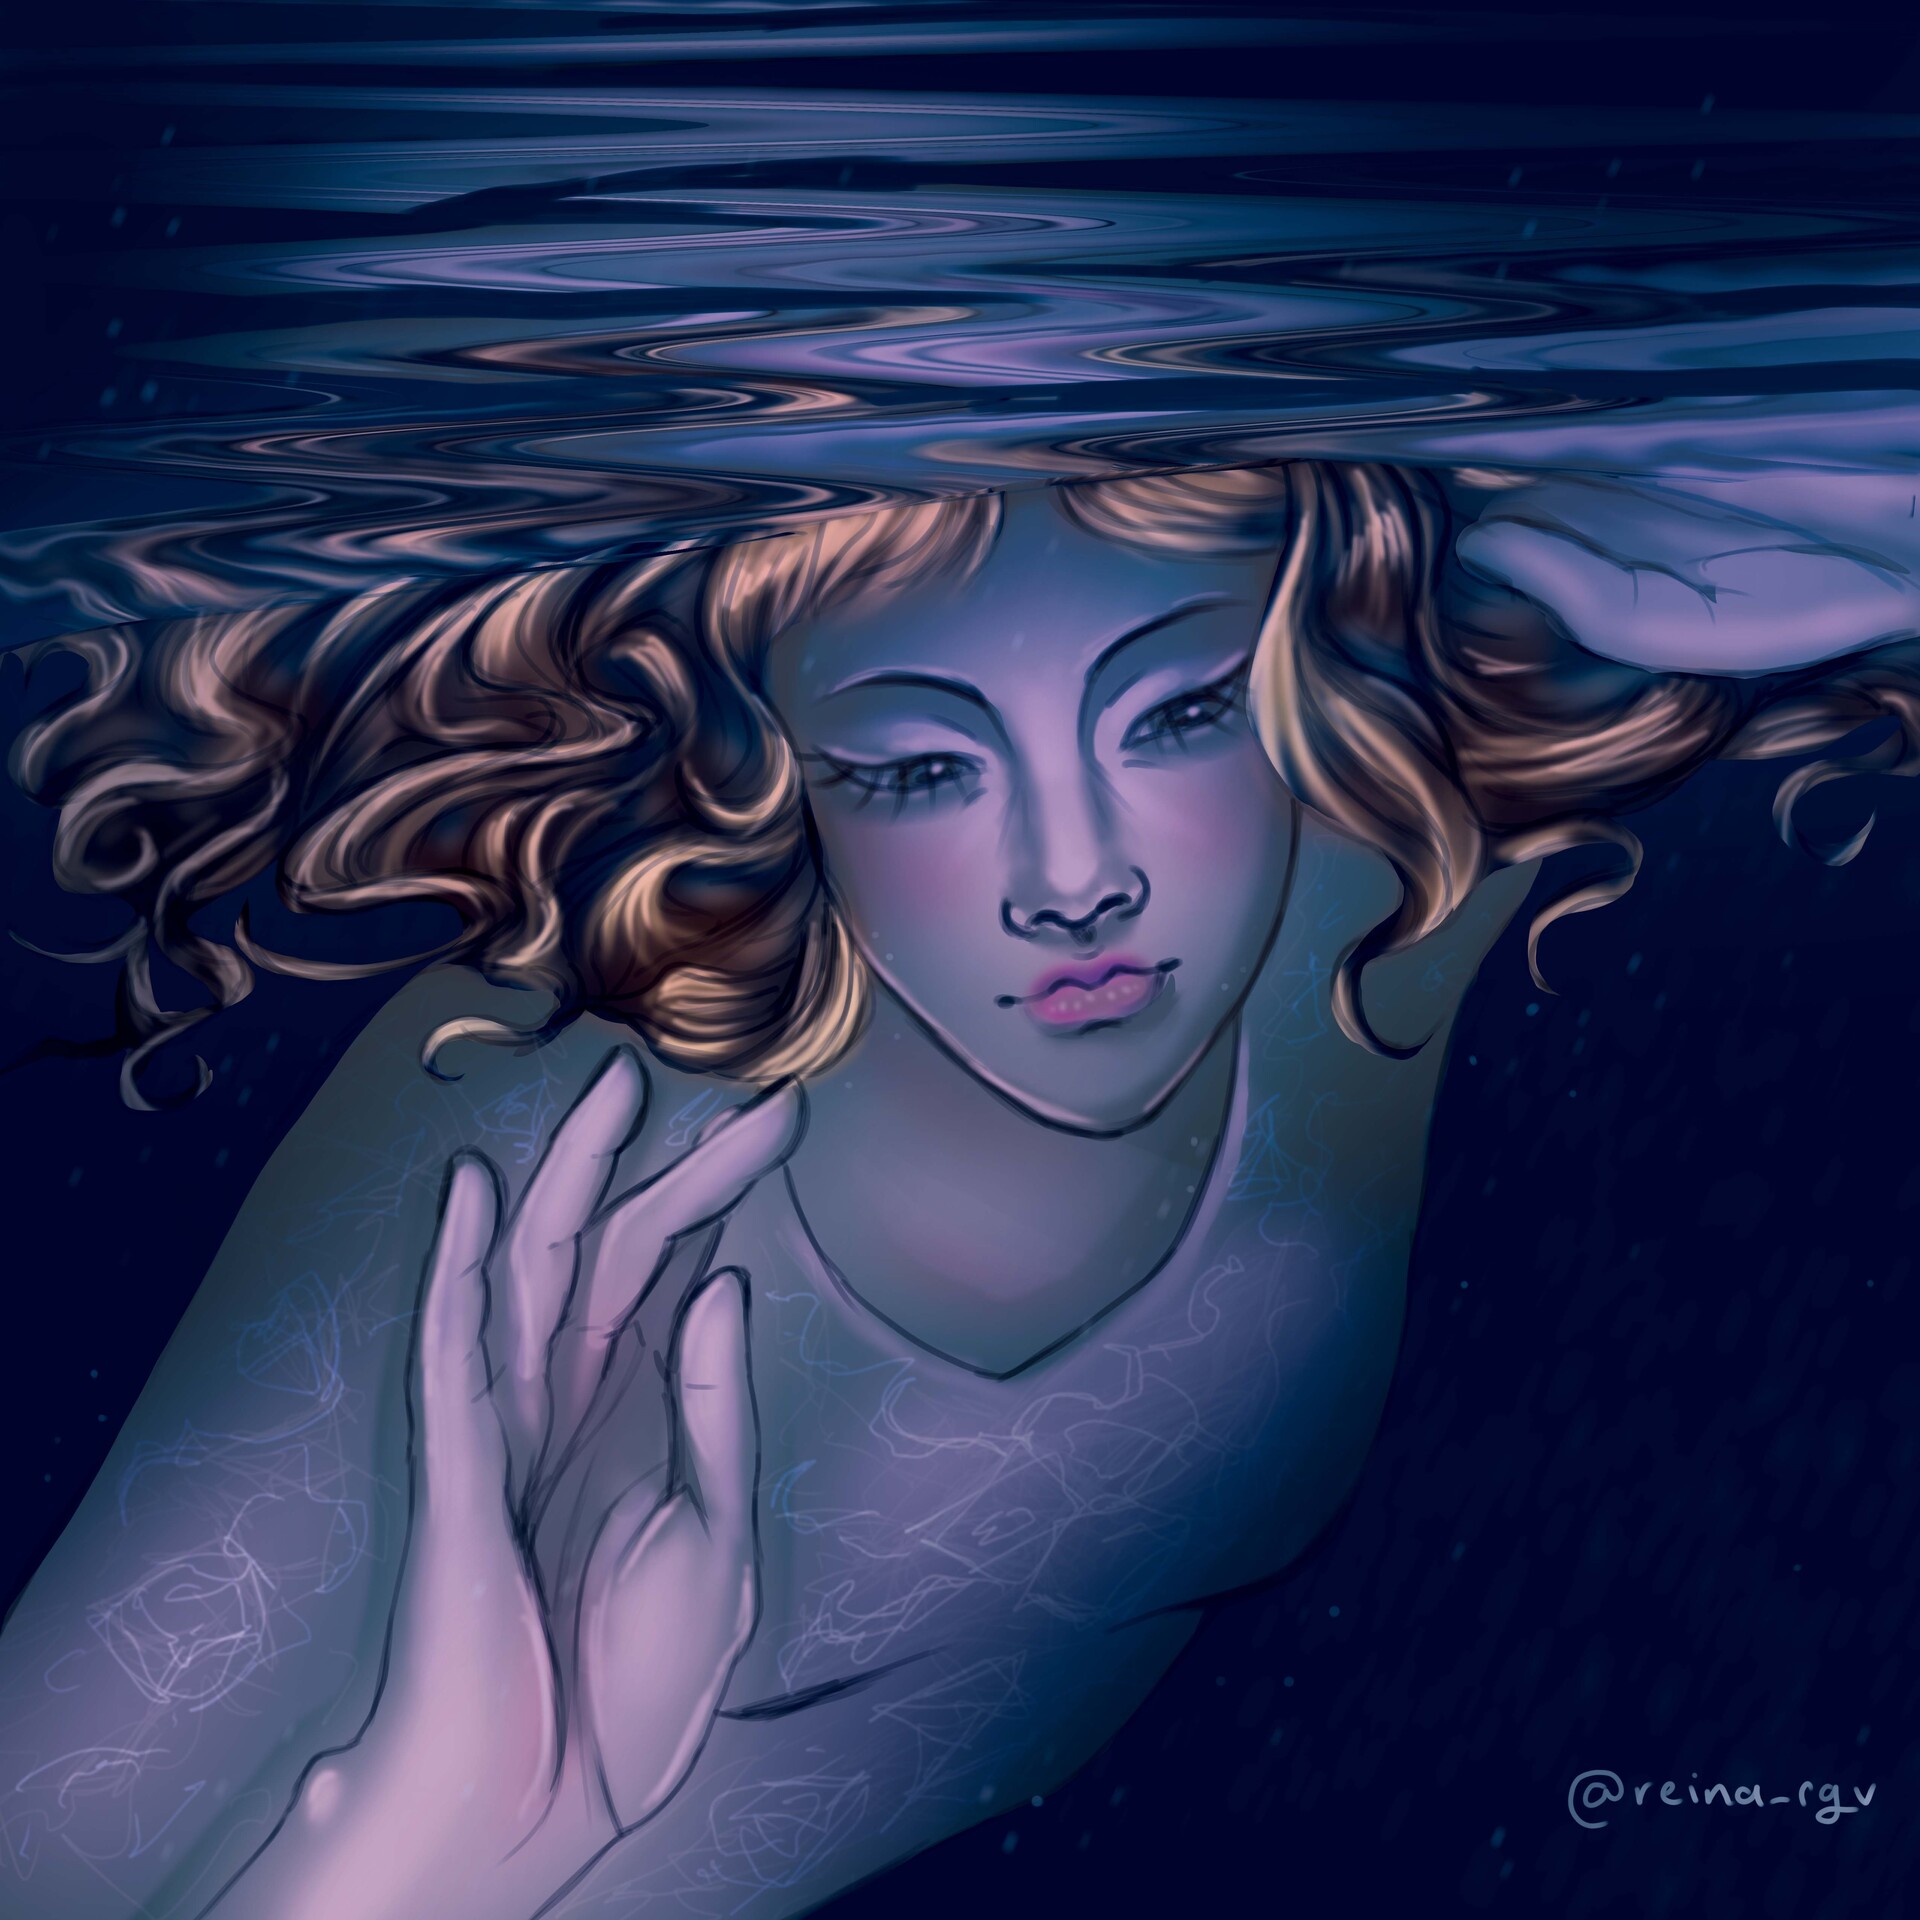 ArtStation - Girl Underwater